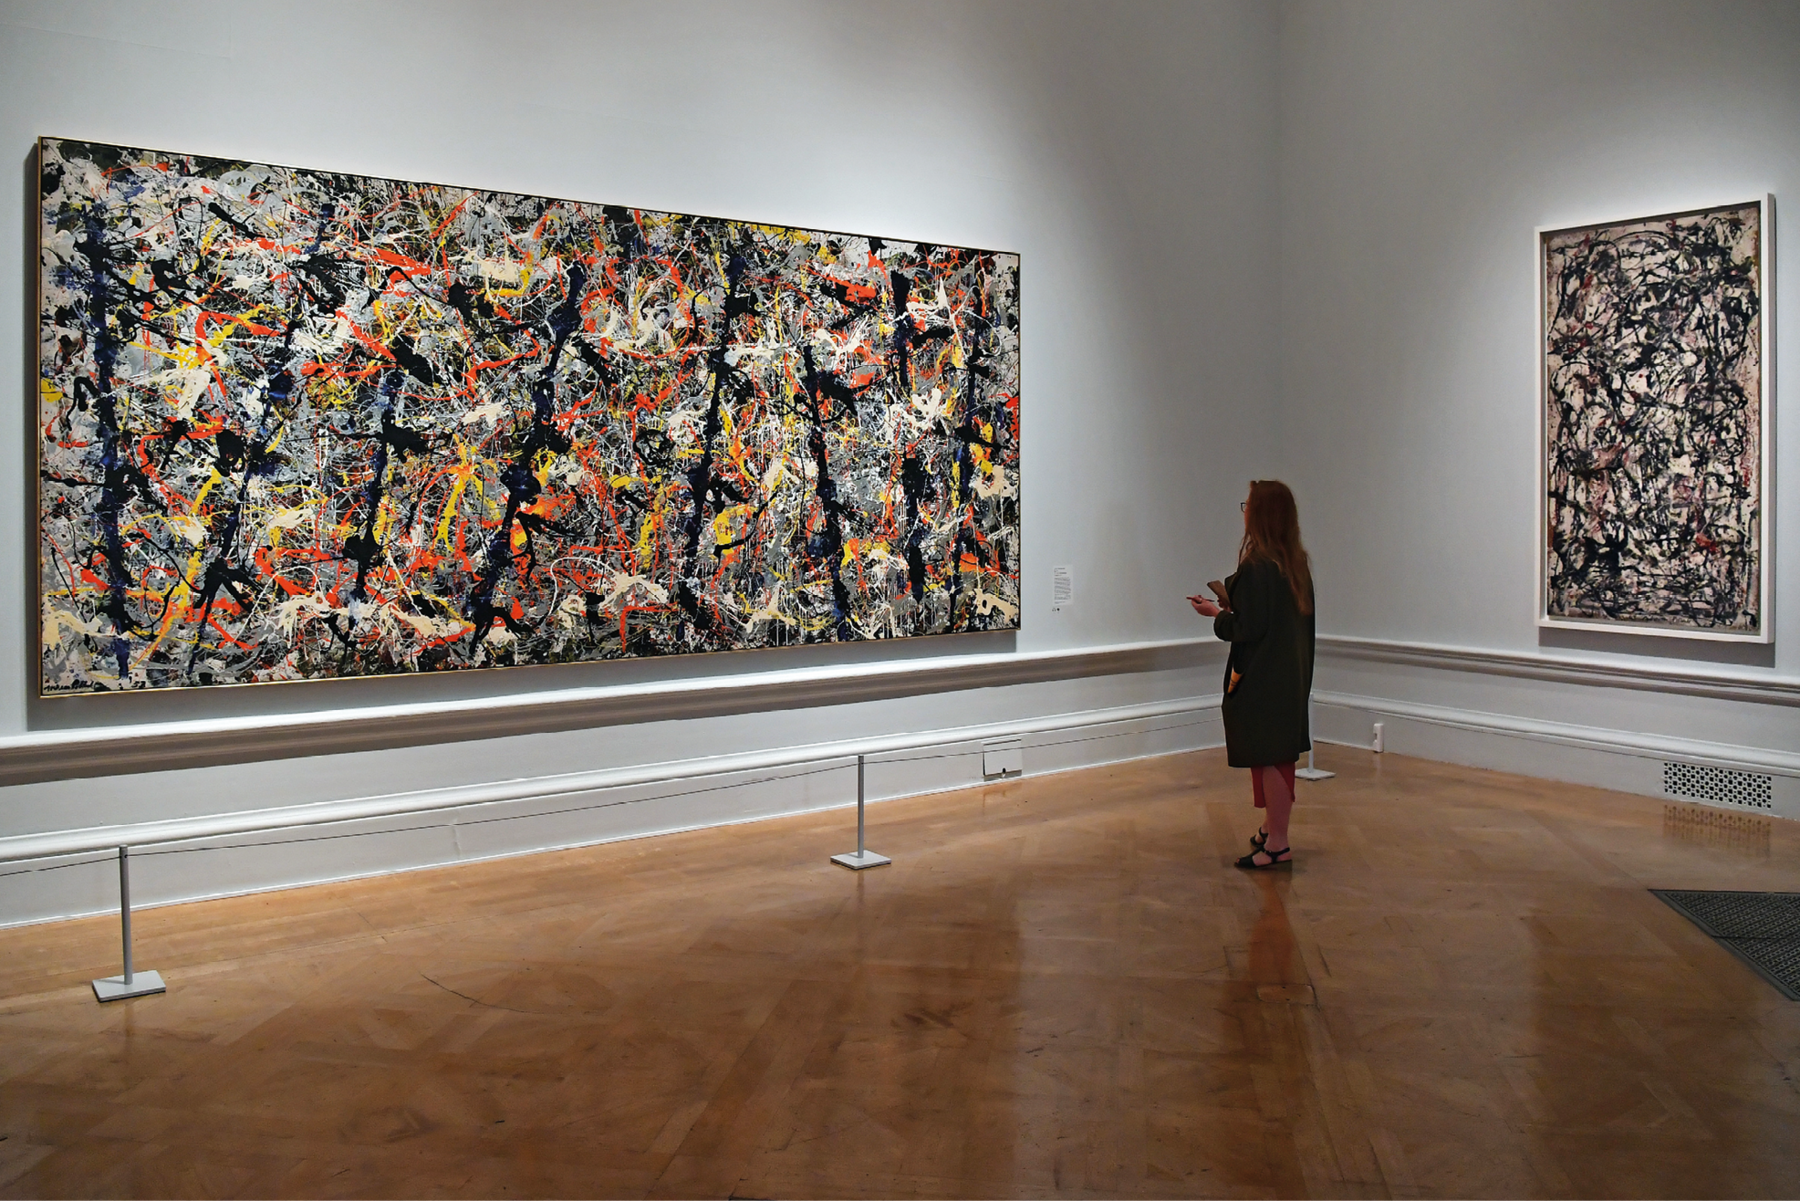 Fotografia. Uma mulher usando roupa preta está em um museu e de frente para um quadro retangular com uma pintura abstrata feita com a técnica do gotejamento de tinta. À sua direita, há outro quadro com o mesmo estilo.